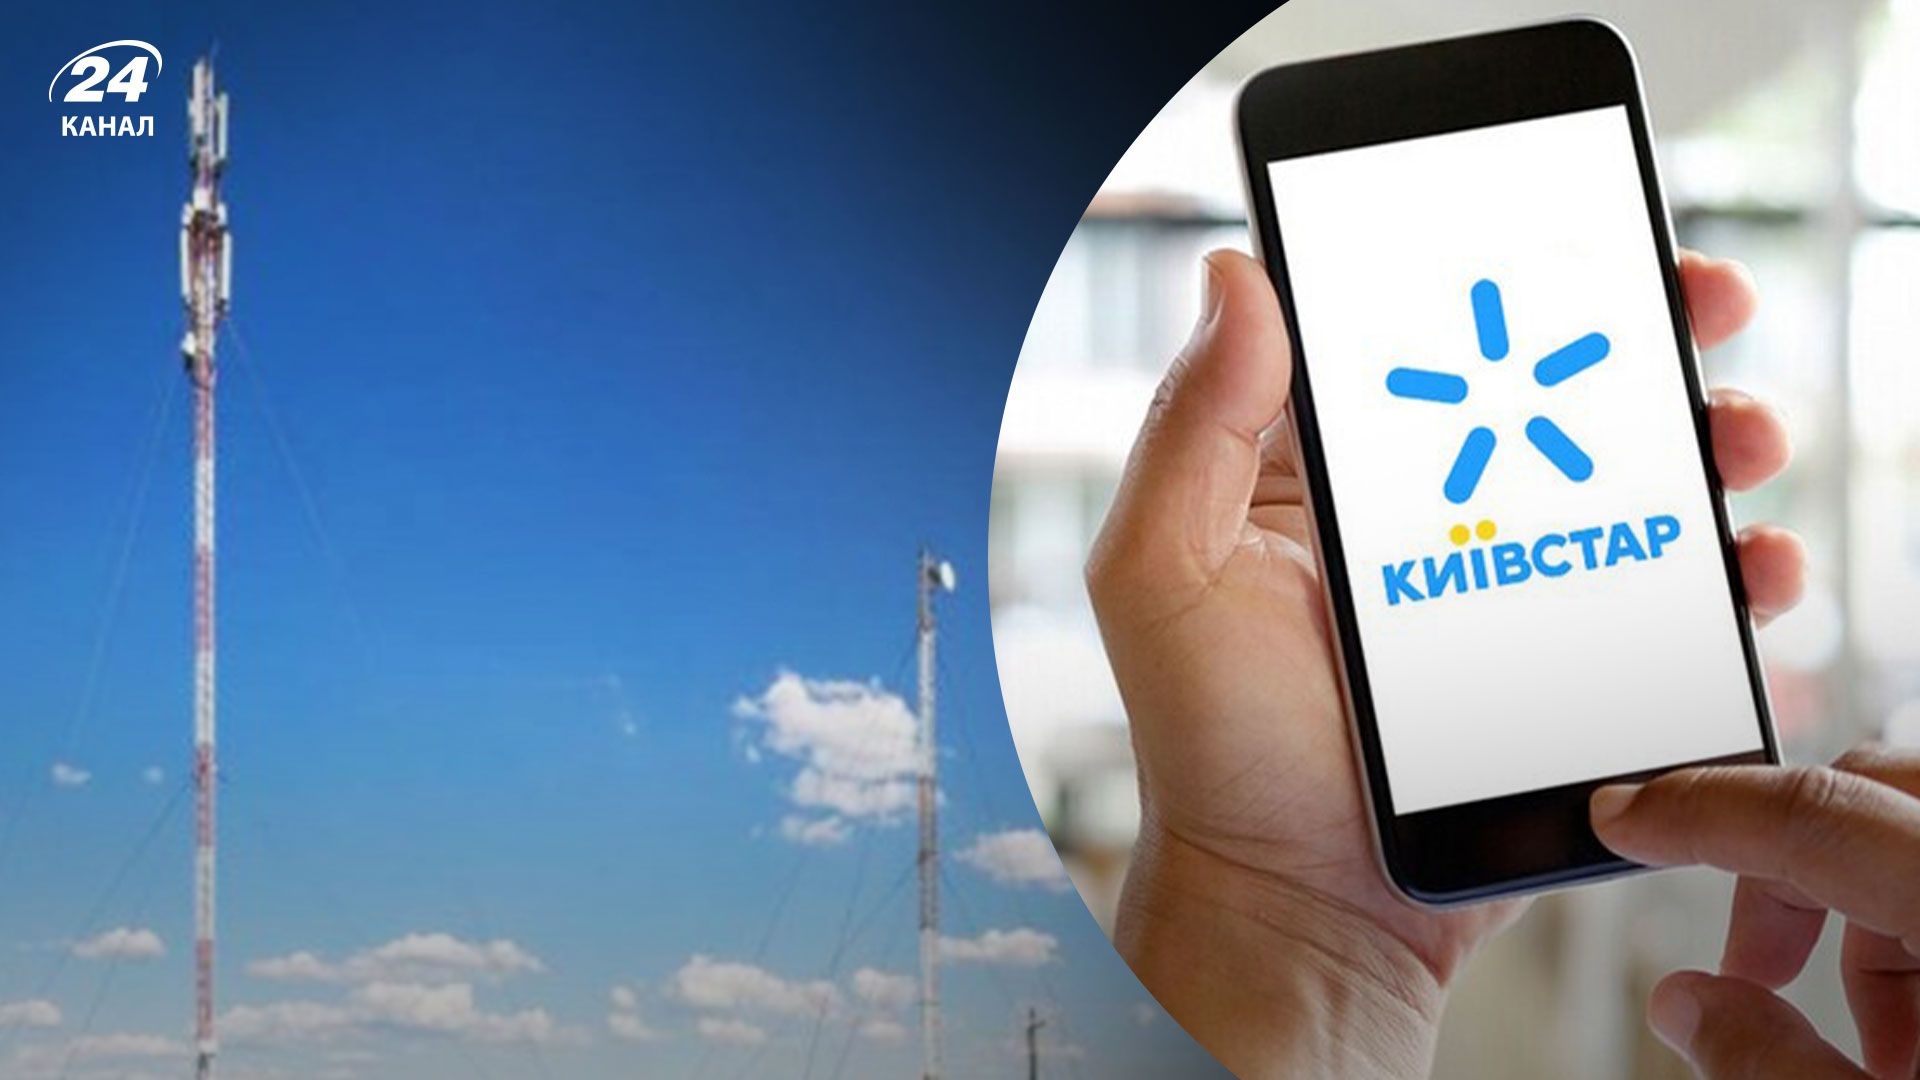 Київстар відновив доступ до мобільного інтернету майже по всій території України: працює і 4G - Техно